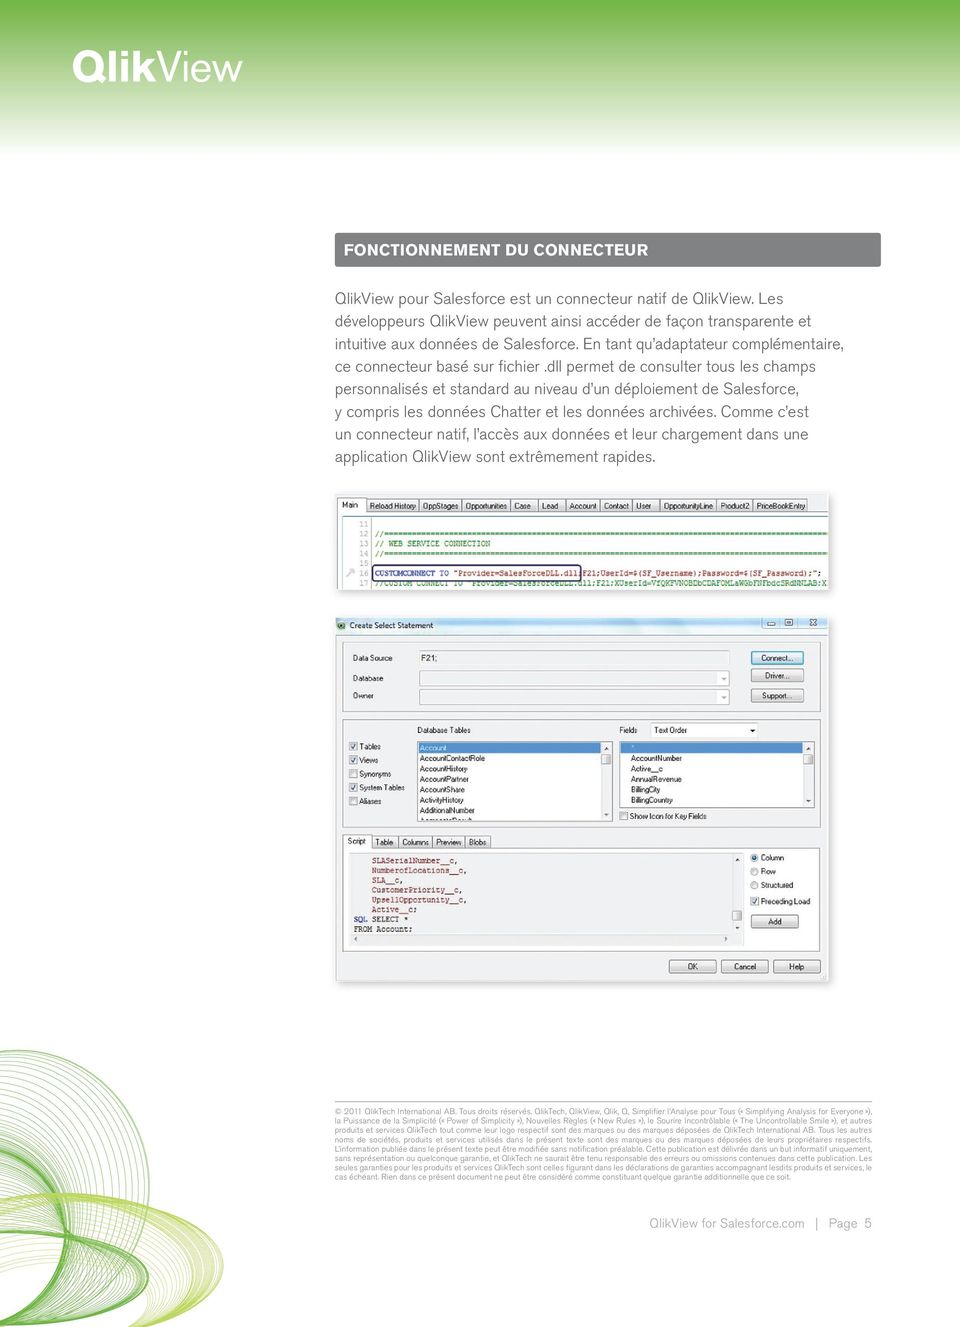 dll permet de consulter tous les champs personnalisés et standard au niveau d un déploiement de Salesforce, y compris les données Chatter et les données archivées.